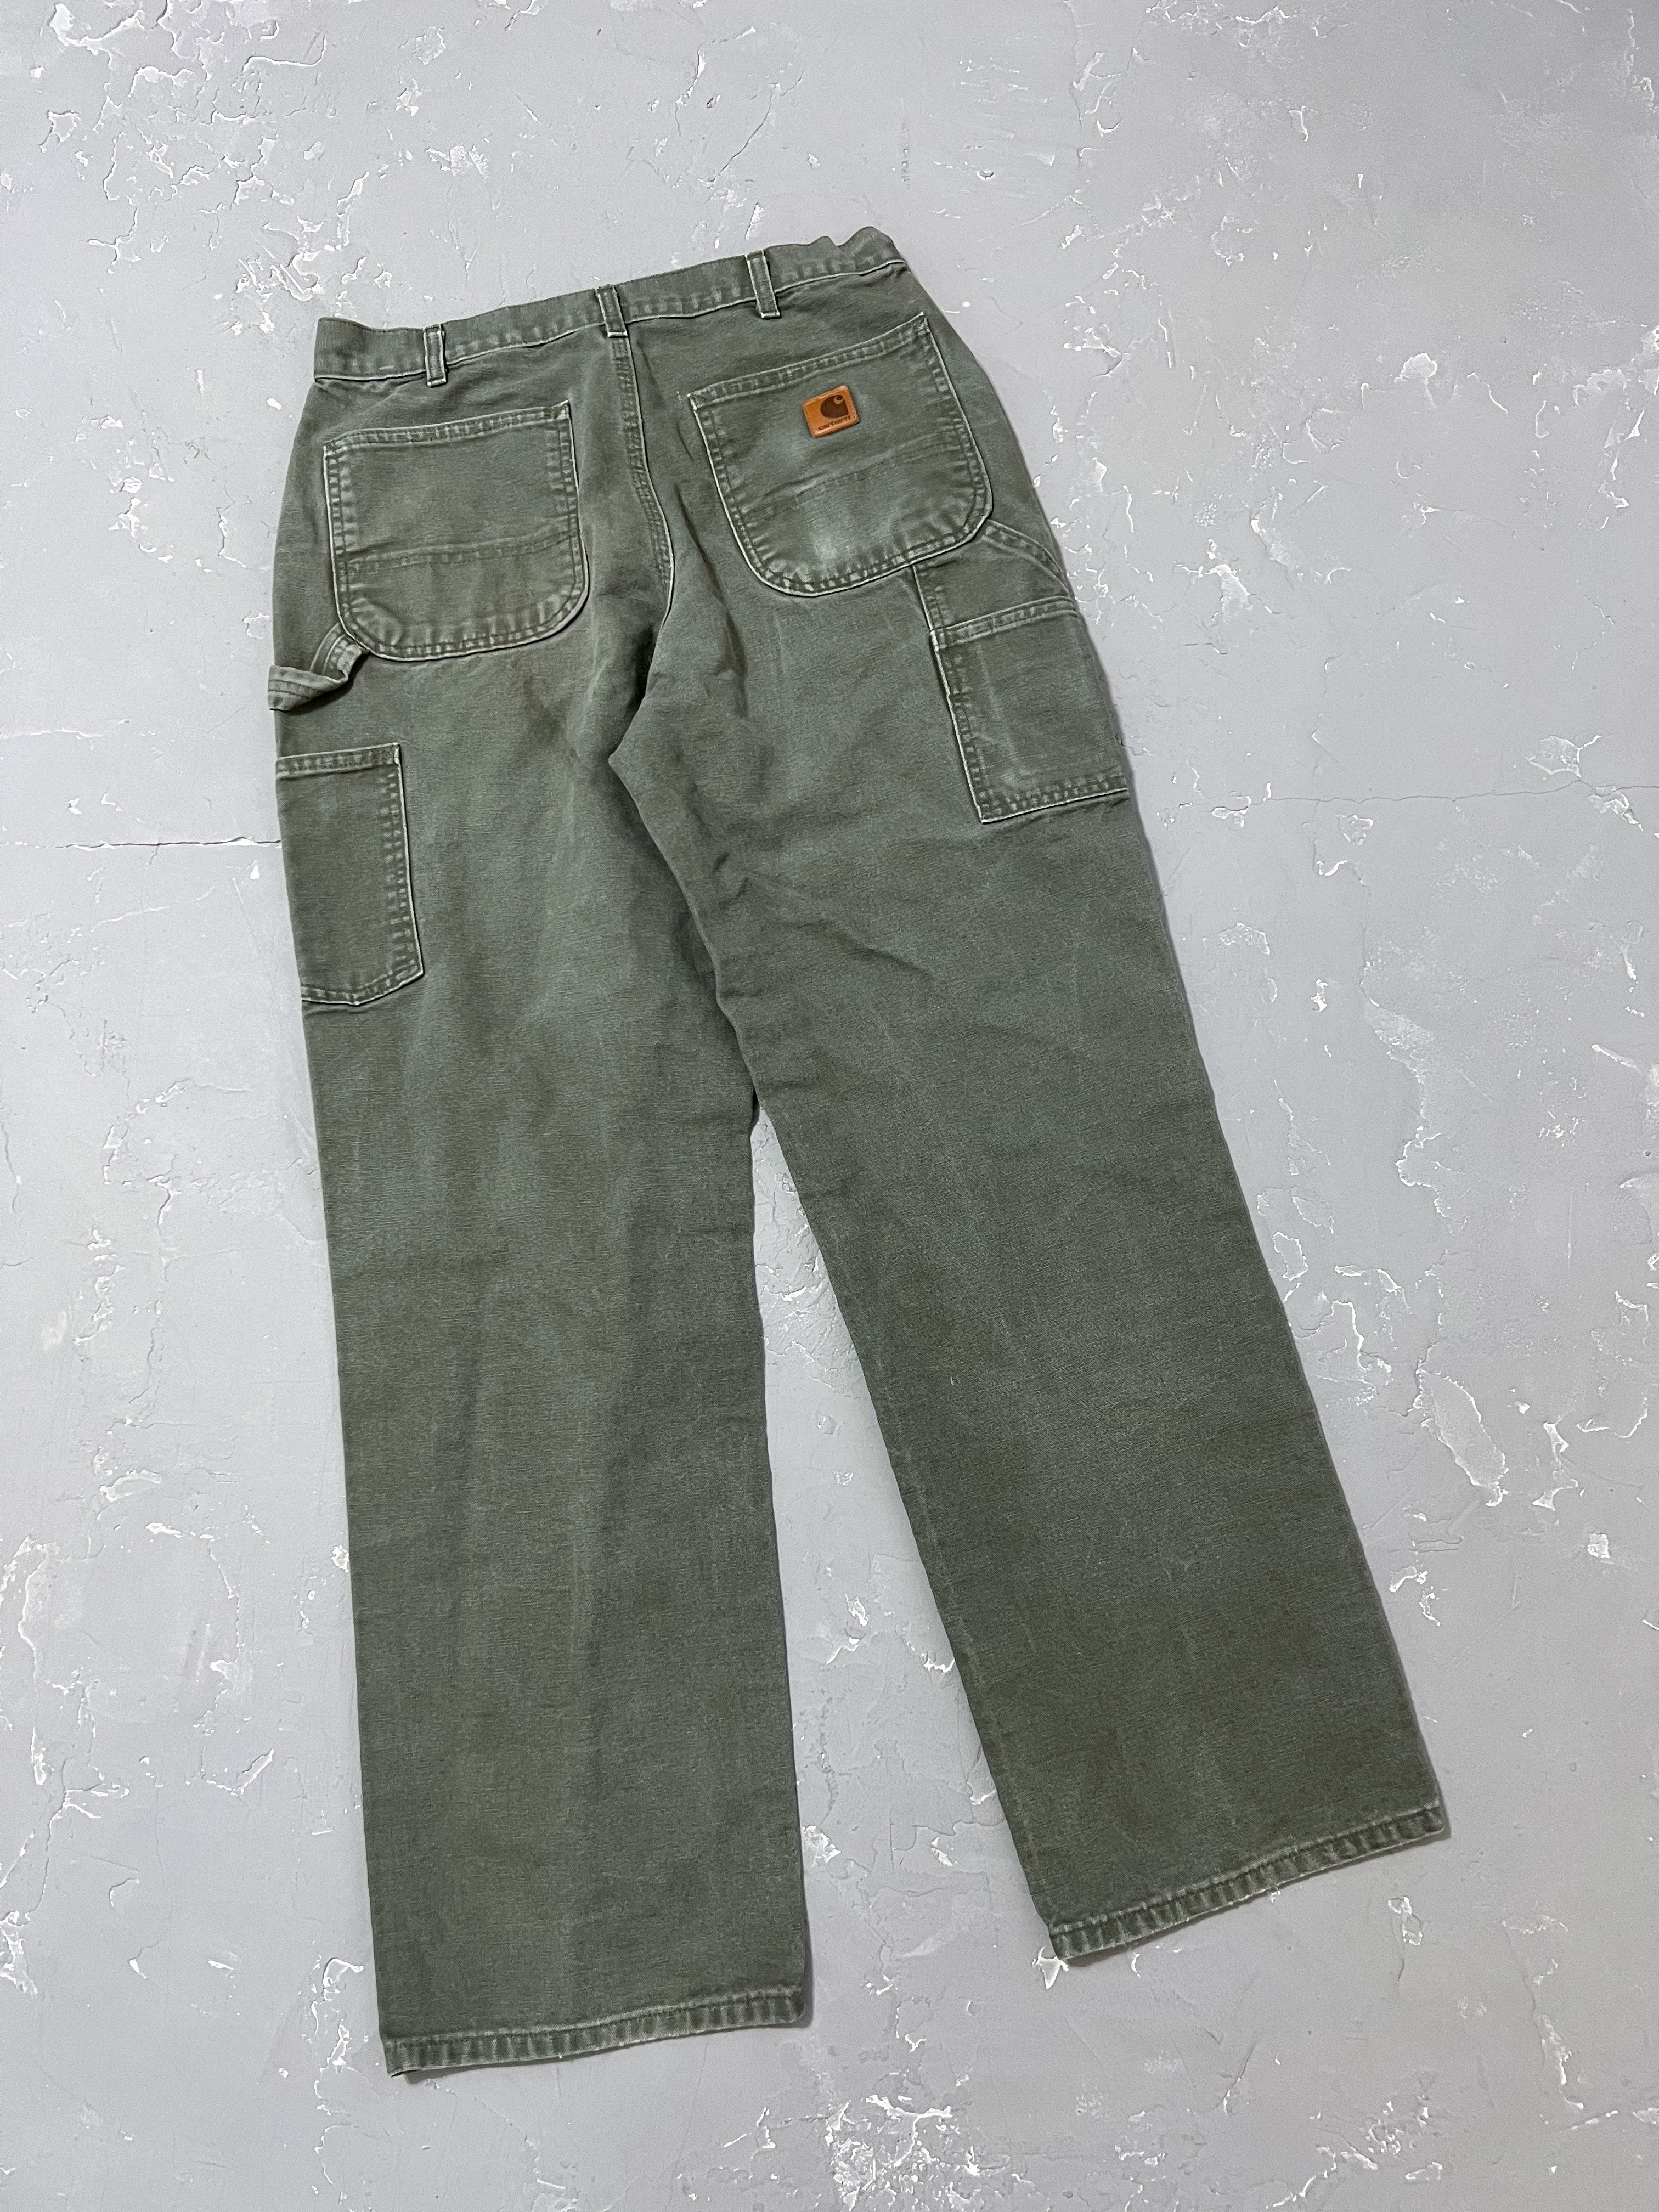 Carhartt Moss Green Carpenter Pants [32 x 34]